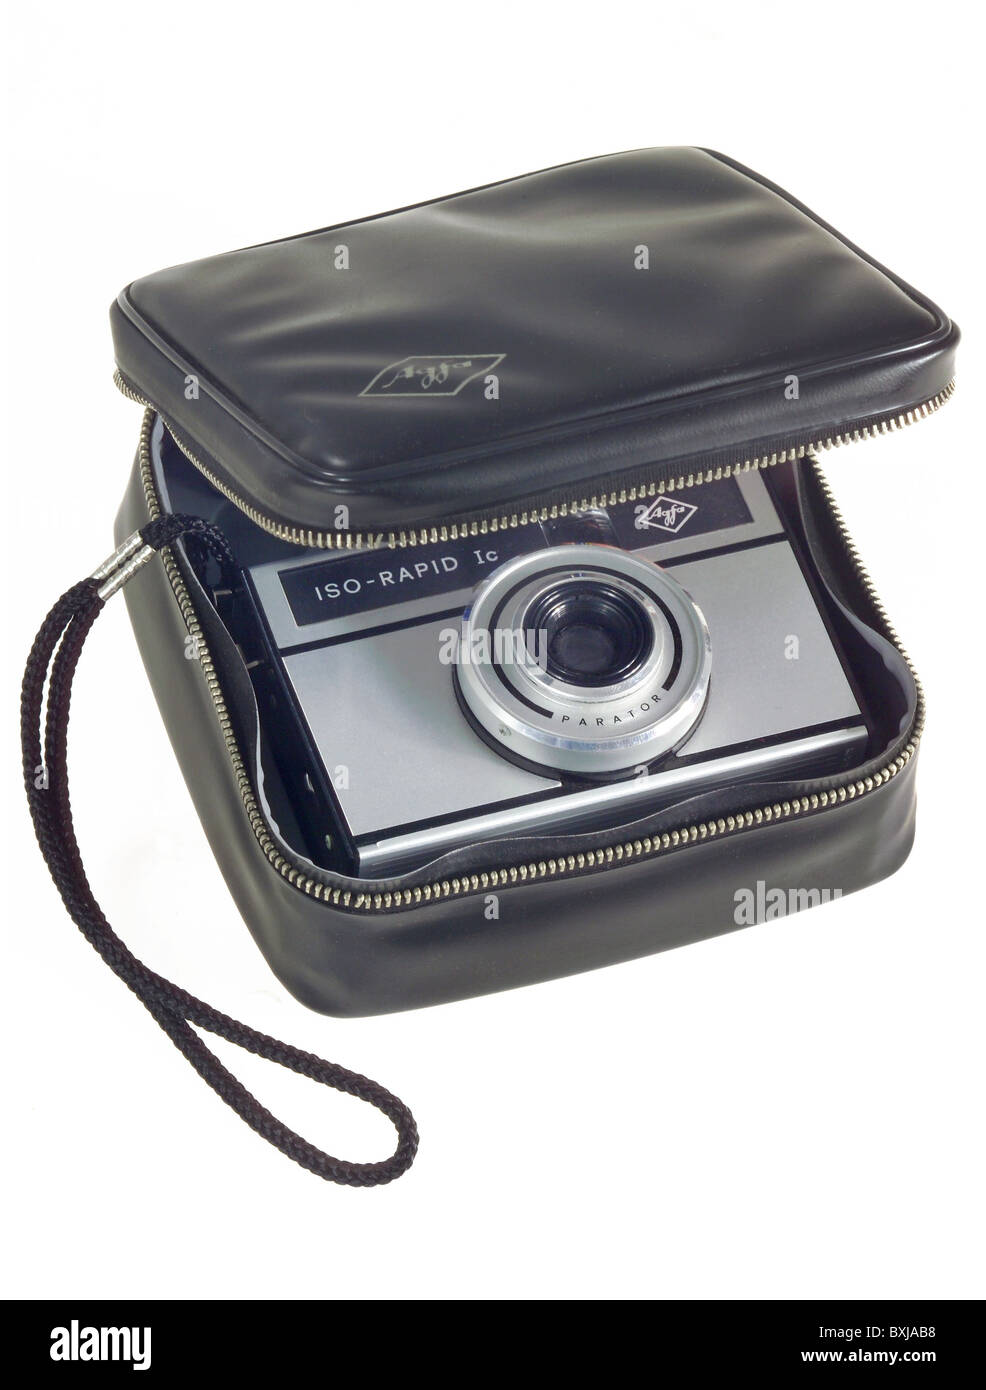 Fotografia, fotocamere, pellicola da 35 mm, Agfa ISO Rapid IC, Germania, 1965, diritti-aggiuntivi-clearences-non disponibile Foto Stock